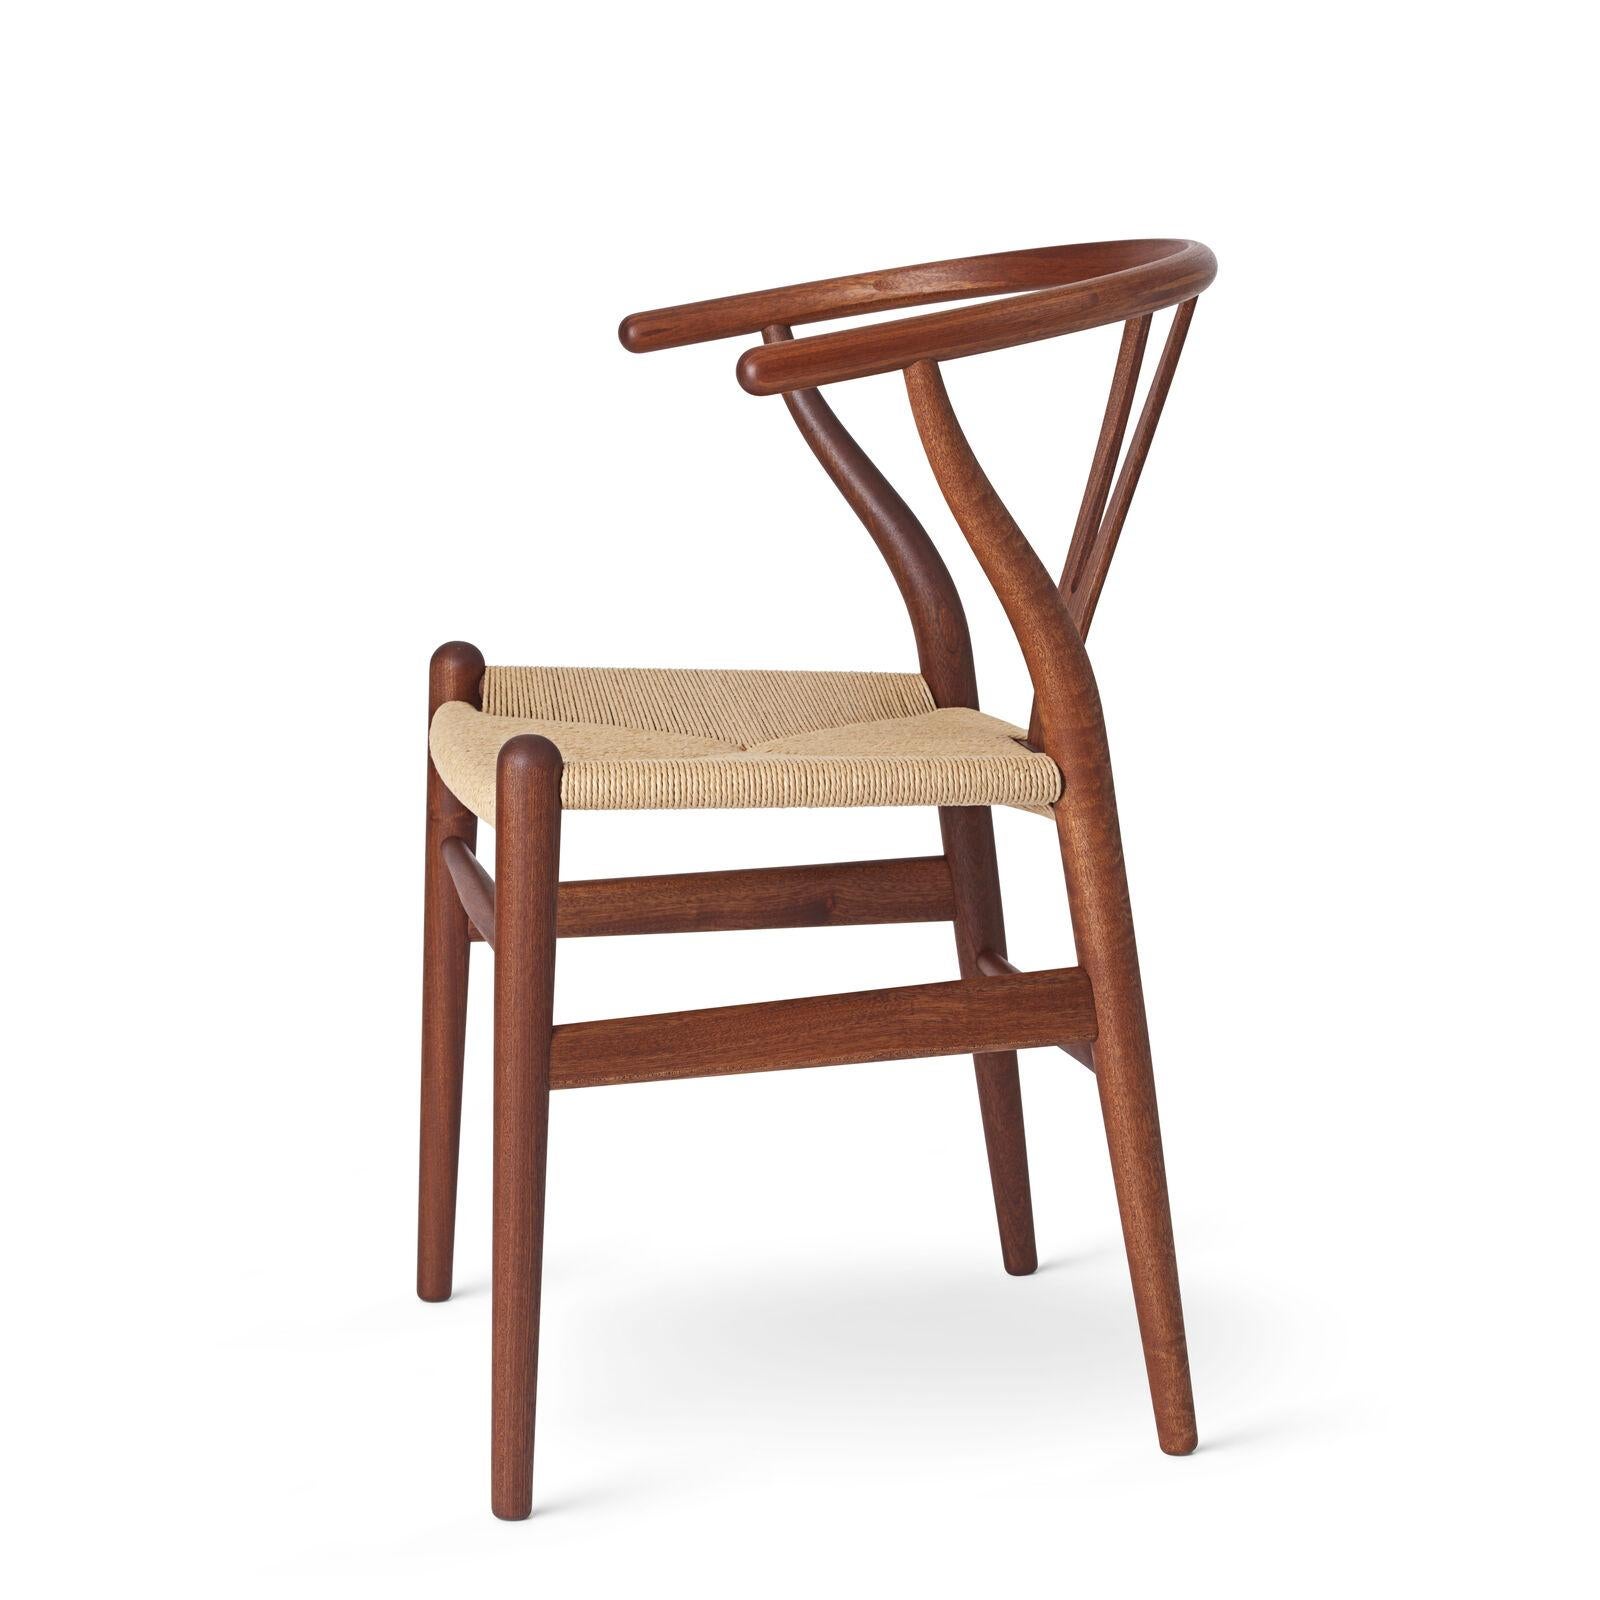 Le tout premier modèle que Hans J. Wegner a conçu exclusivement pour Carl Hansen & Søn en 1949, la CH24 ou chaise Wishbone, a été produit en continu depuis son introduction en 1950.